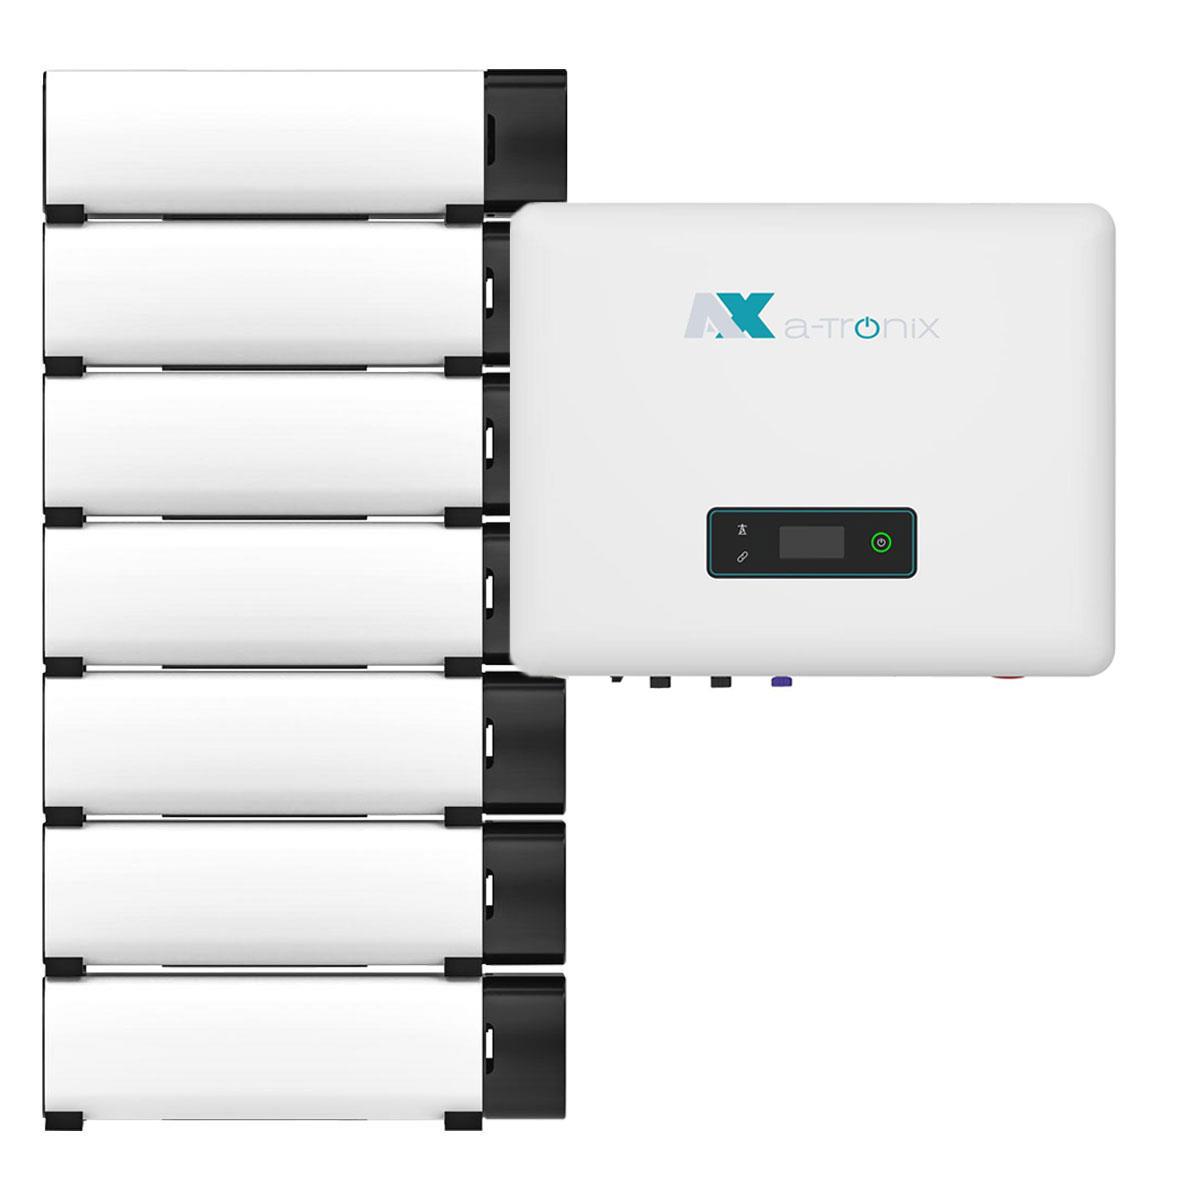 a-TroniX AX2 12kWp PV Komplettanlage mit Solarmodulen und 13,8kWh Speiche